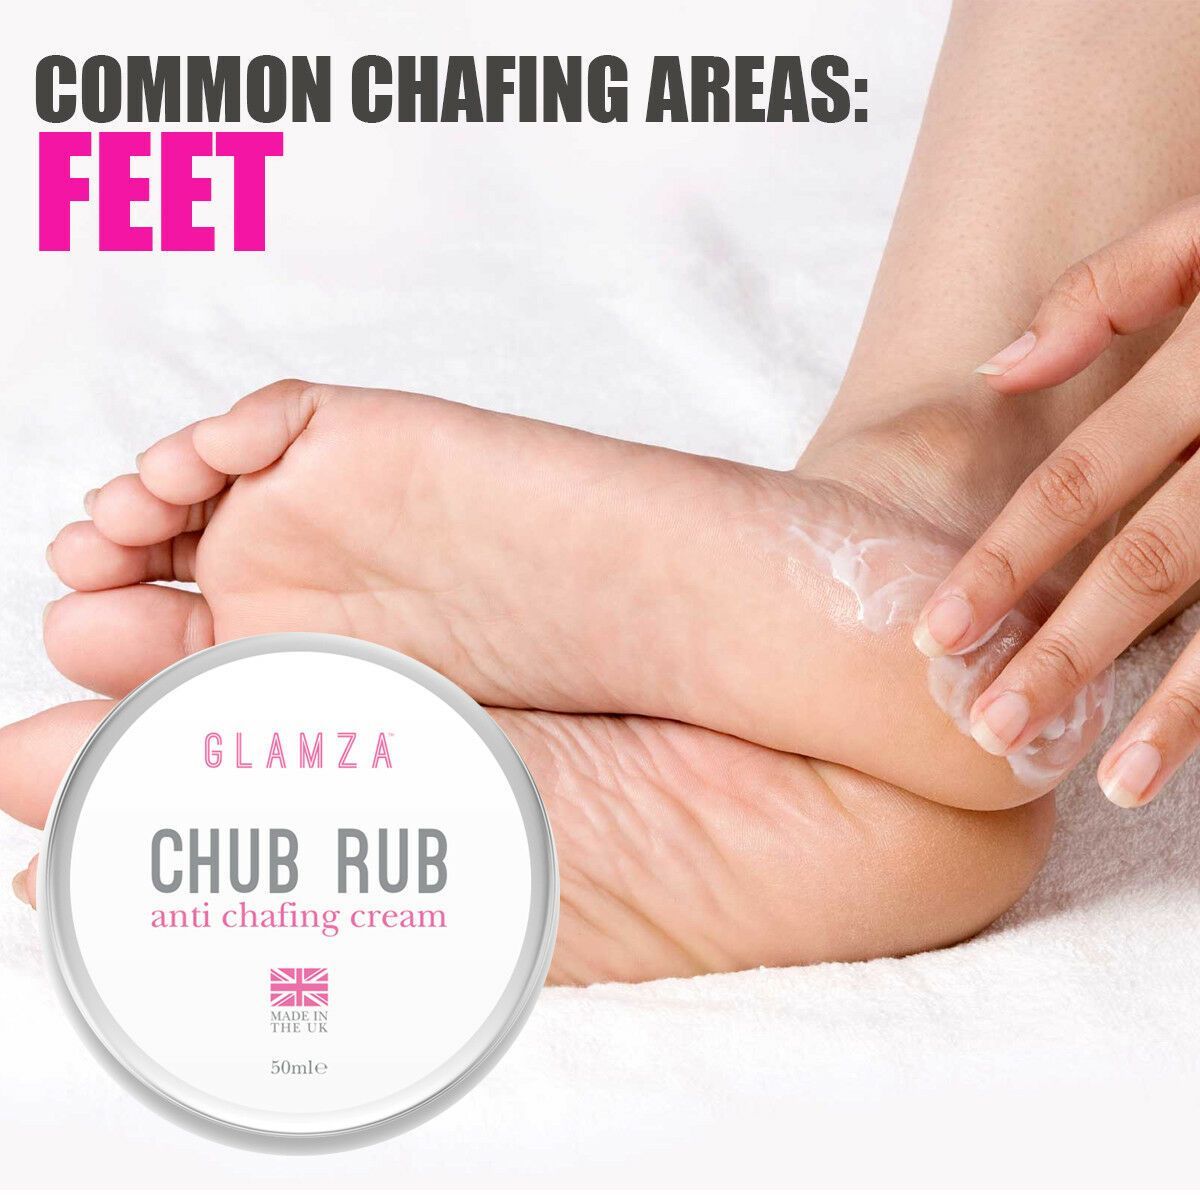 Glamza Chub Rub Anti Chafing Cream 50ml – My Wholesale Warehouse